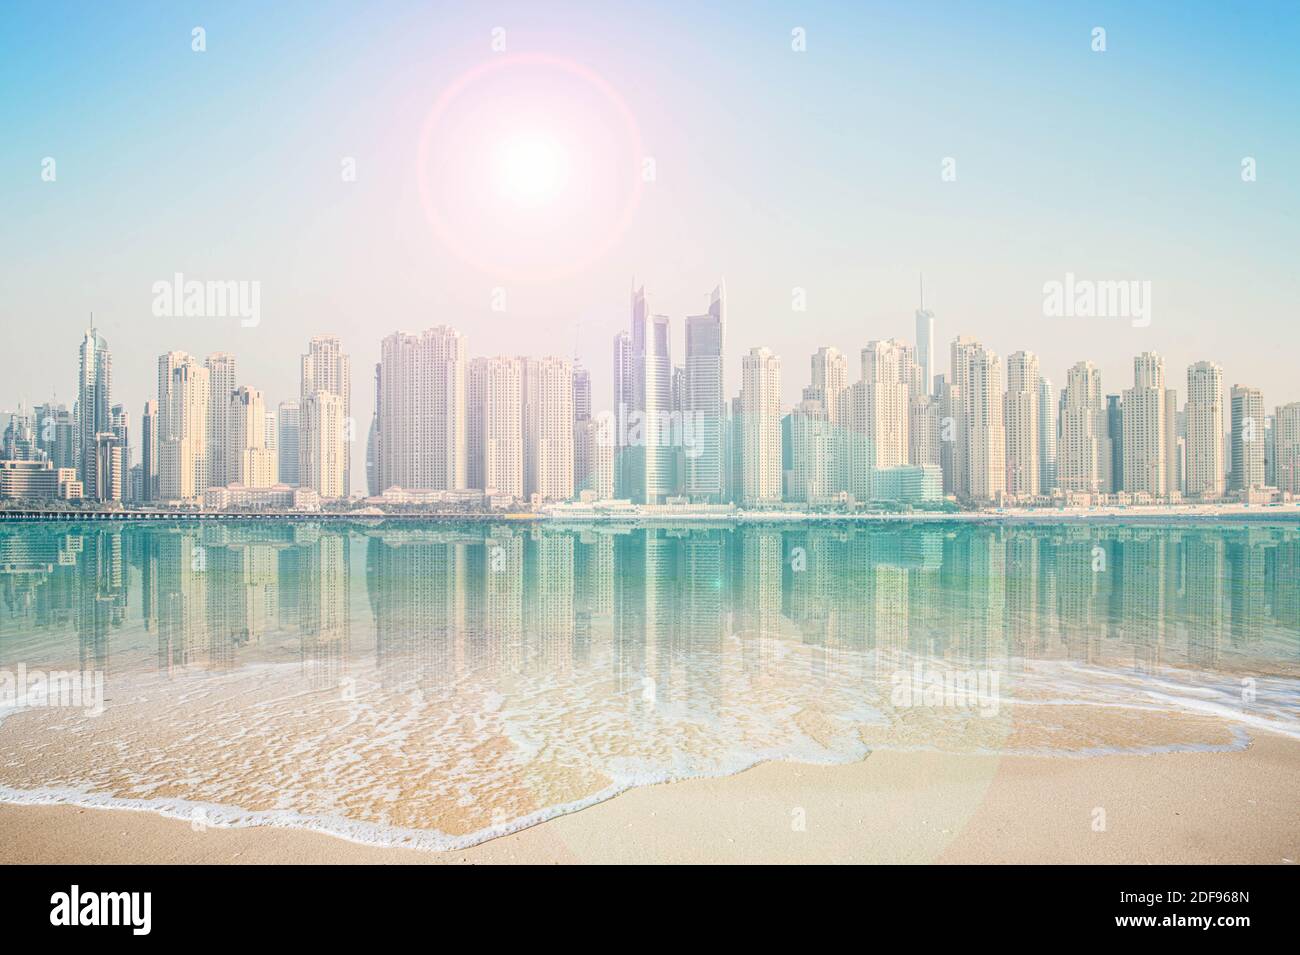 Paesaggio urbano futuristico degli edifici a Dubai, Emirati Arabi Uniti. Immagini copyright www.edtelling.com Foto Stock